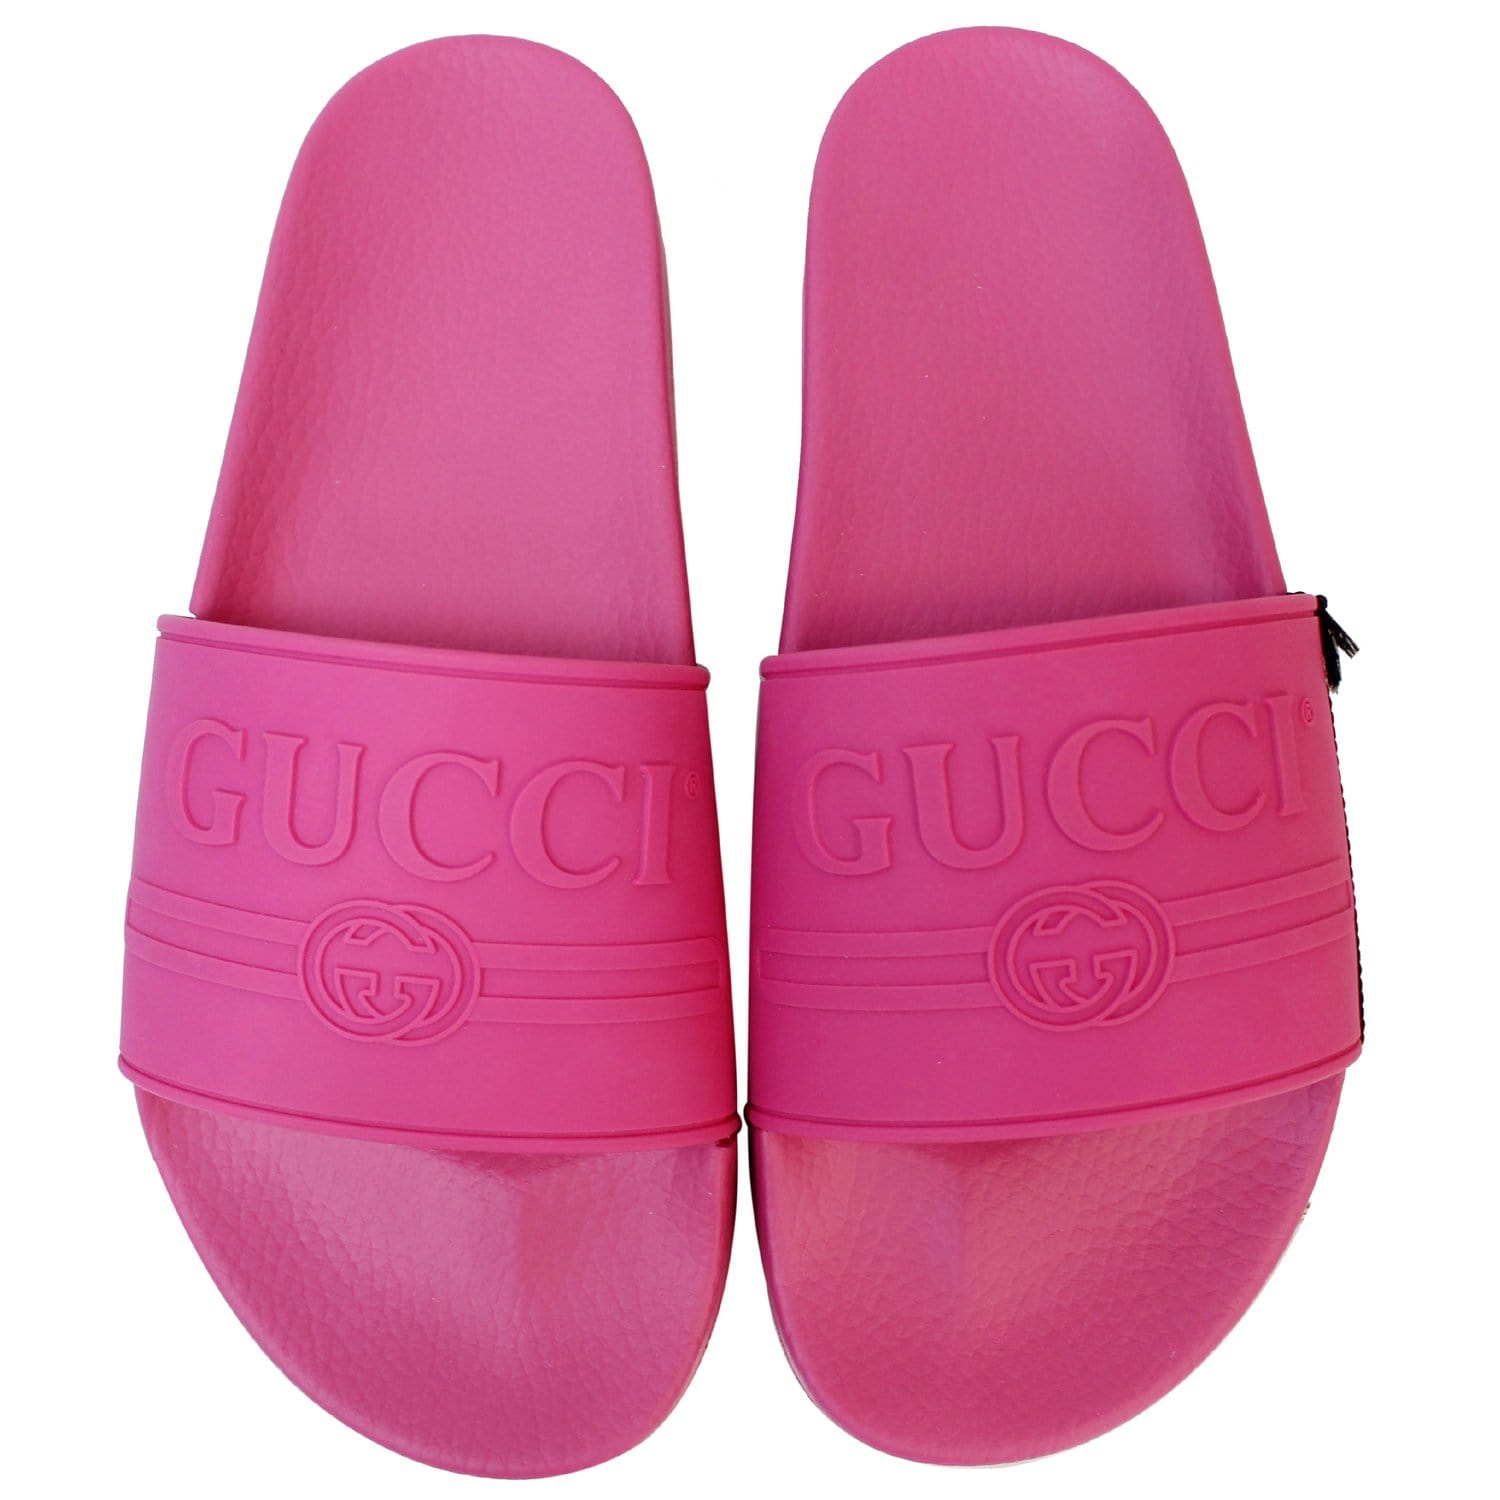 GUCCI Logo Rubber Slide Sandal Pink Size 11 522887